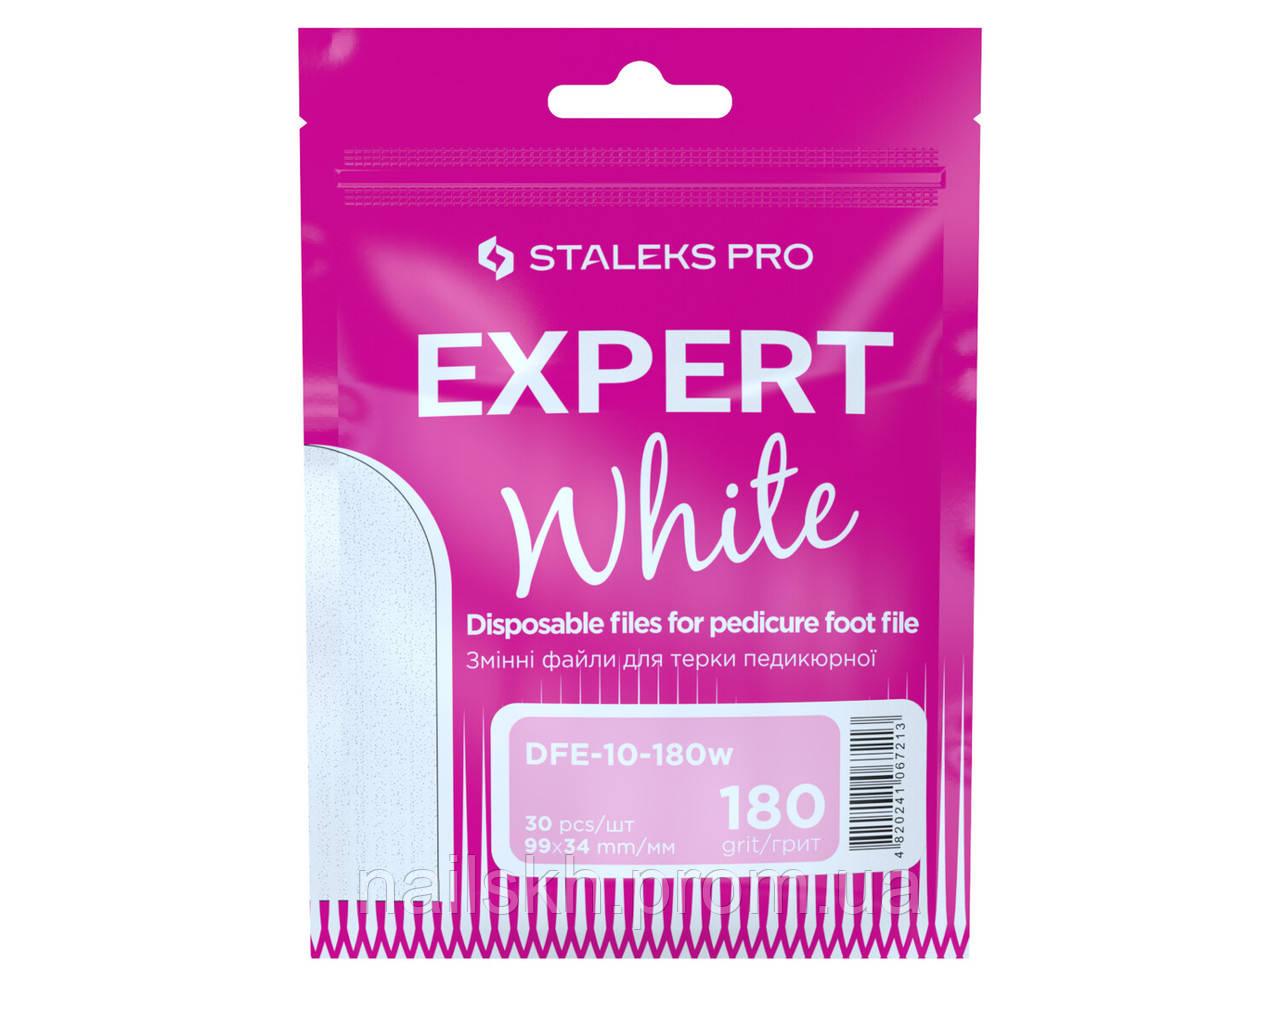 Staleks Pro DFE-10-180w Змінні файли для тертки педикюрної 180 грит (30 шт) - білі